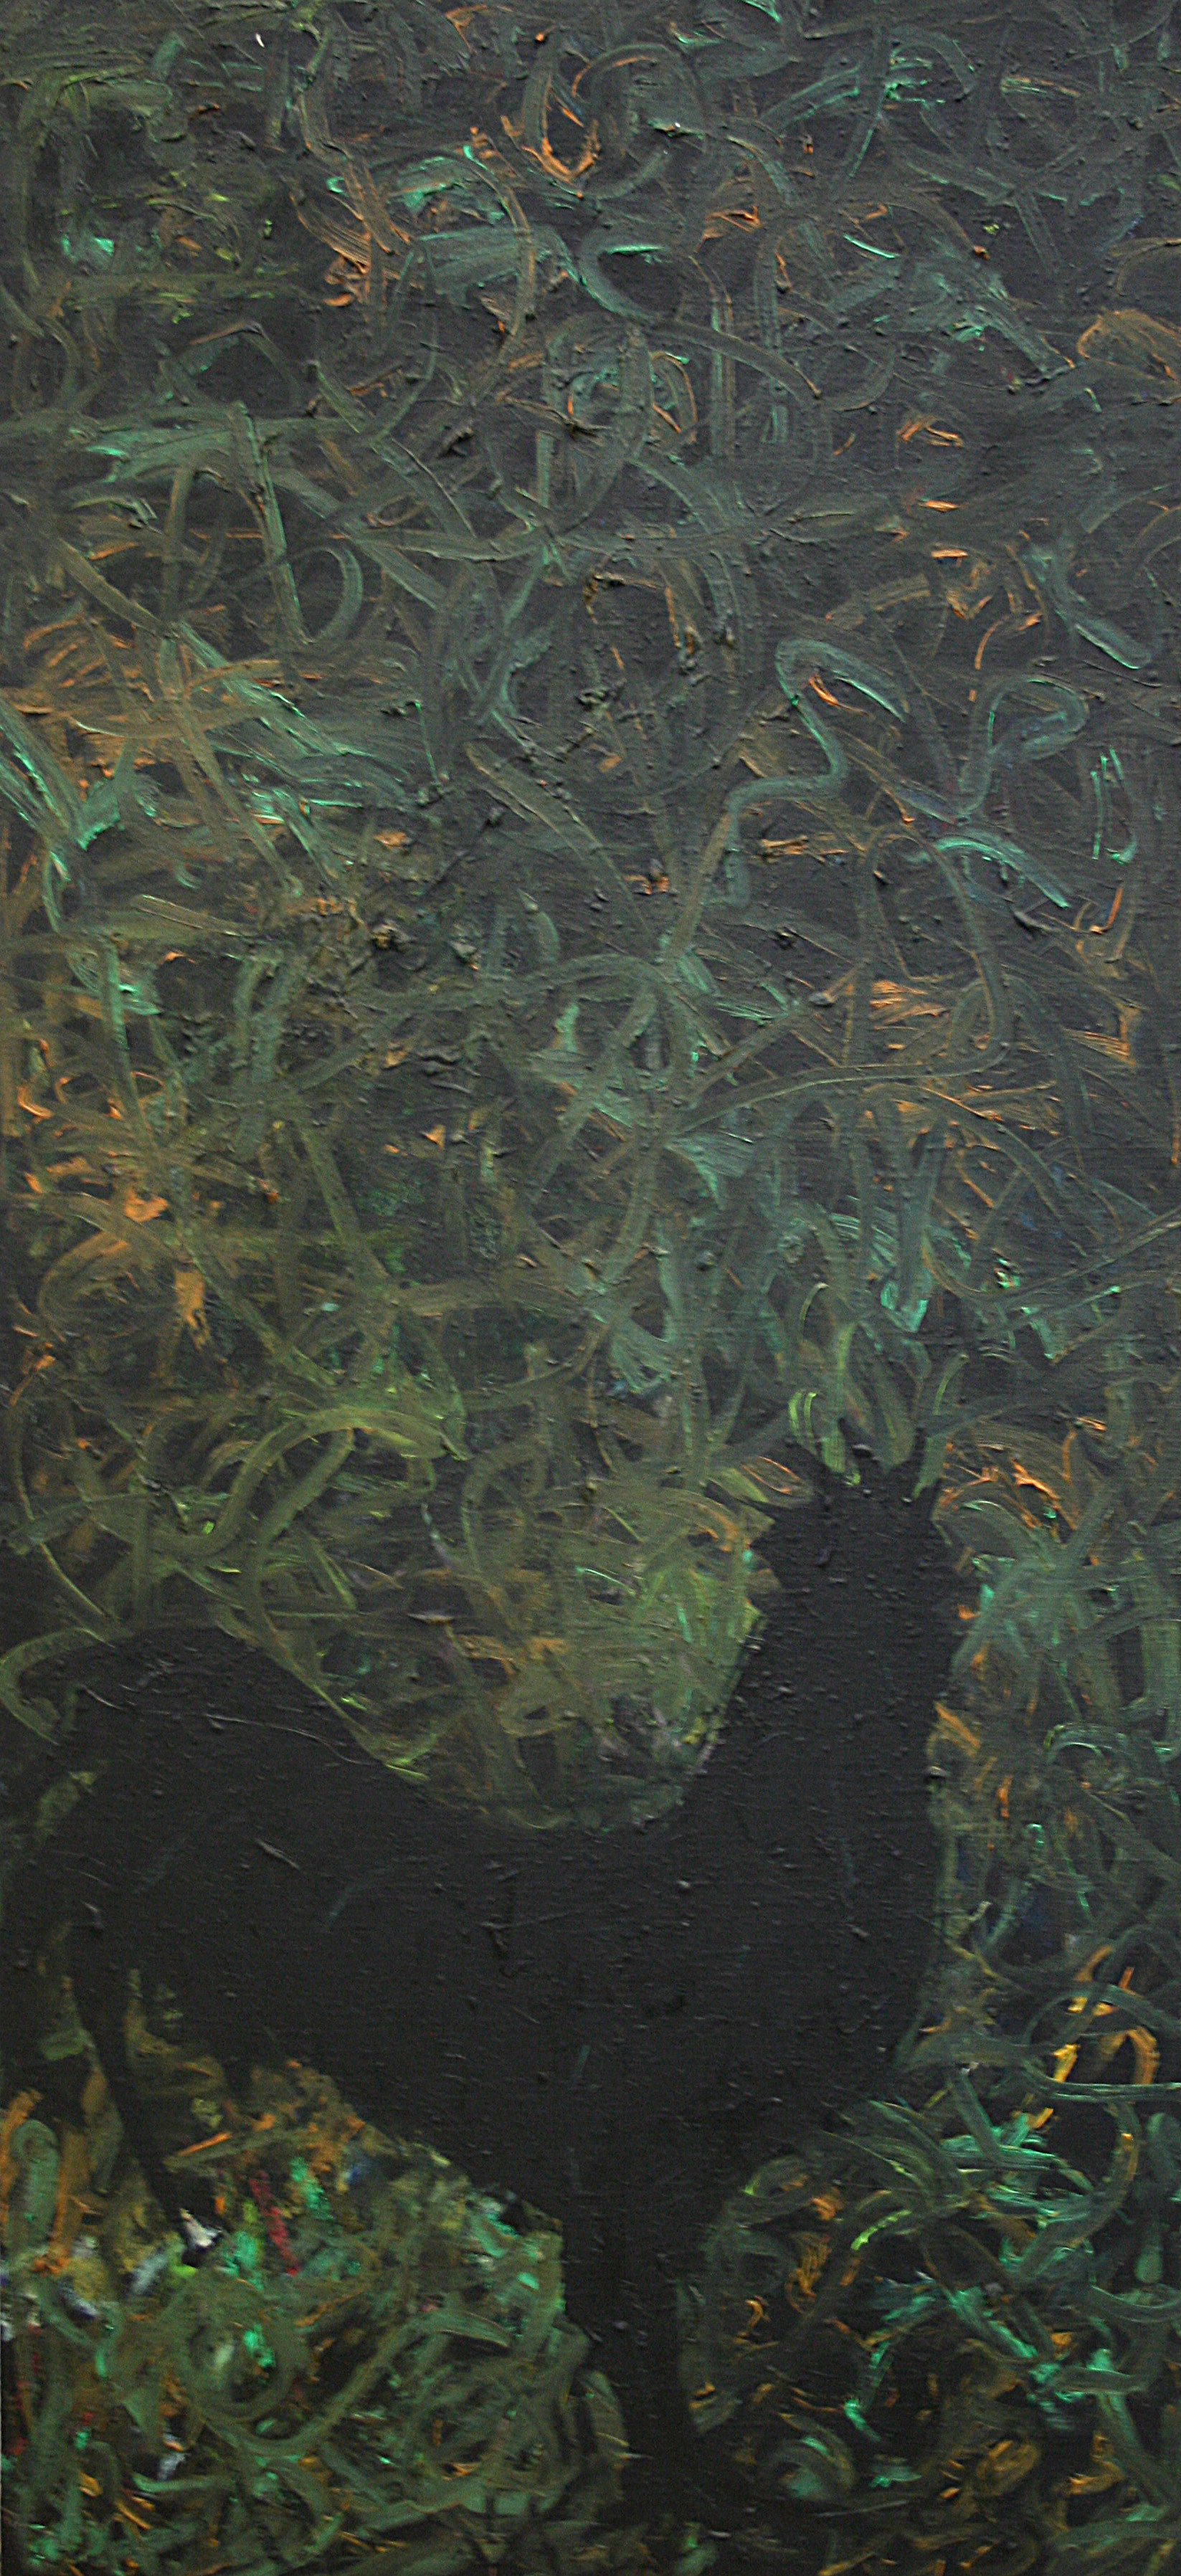 Raafed-Jarah 74, Untitle, oil on canvac, 60 X 129 cm. 2008